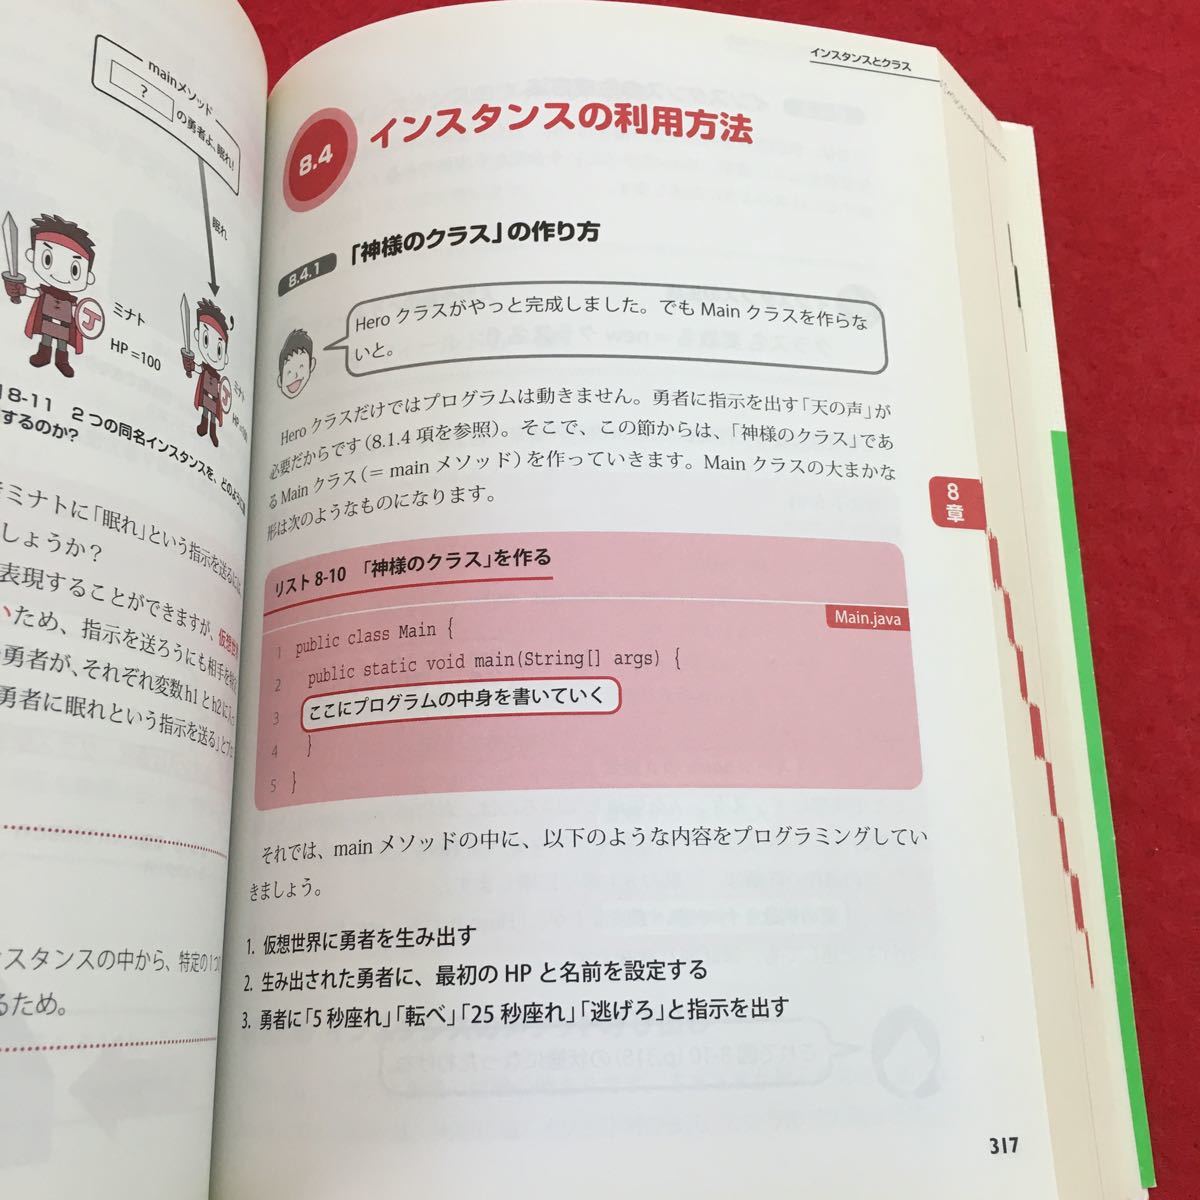 i-307 *0 neat understand Java introduction no. 2 version author Nakayama Kiyoshi . country book@ large .2016 year 8 month 21 day issue corporation Impress program language Java introduction 